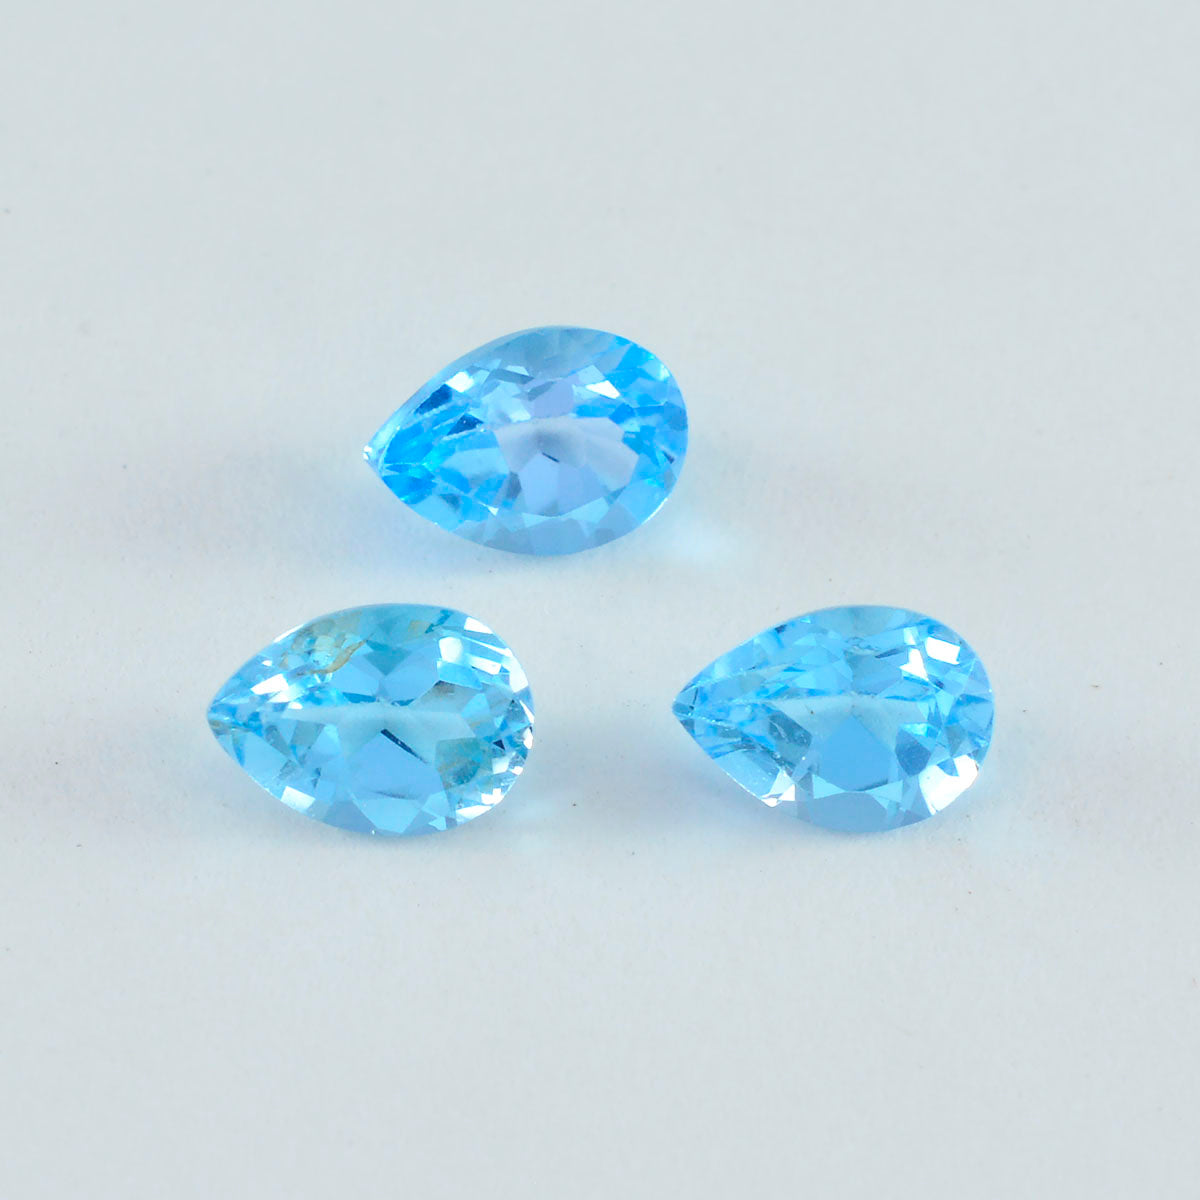 Riyogems 1 pieza de topacio azul natural facetado 0.315 x 0.472 in forma de pera preciosa calidad piedra preciosa suelta